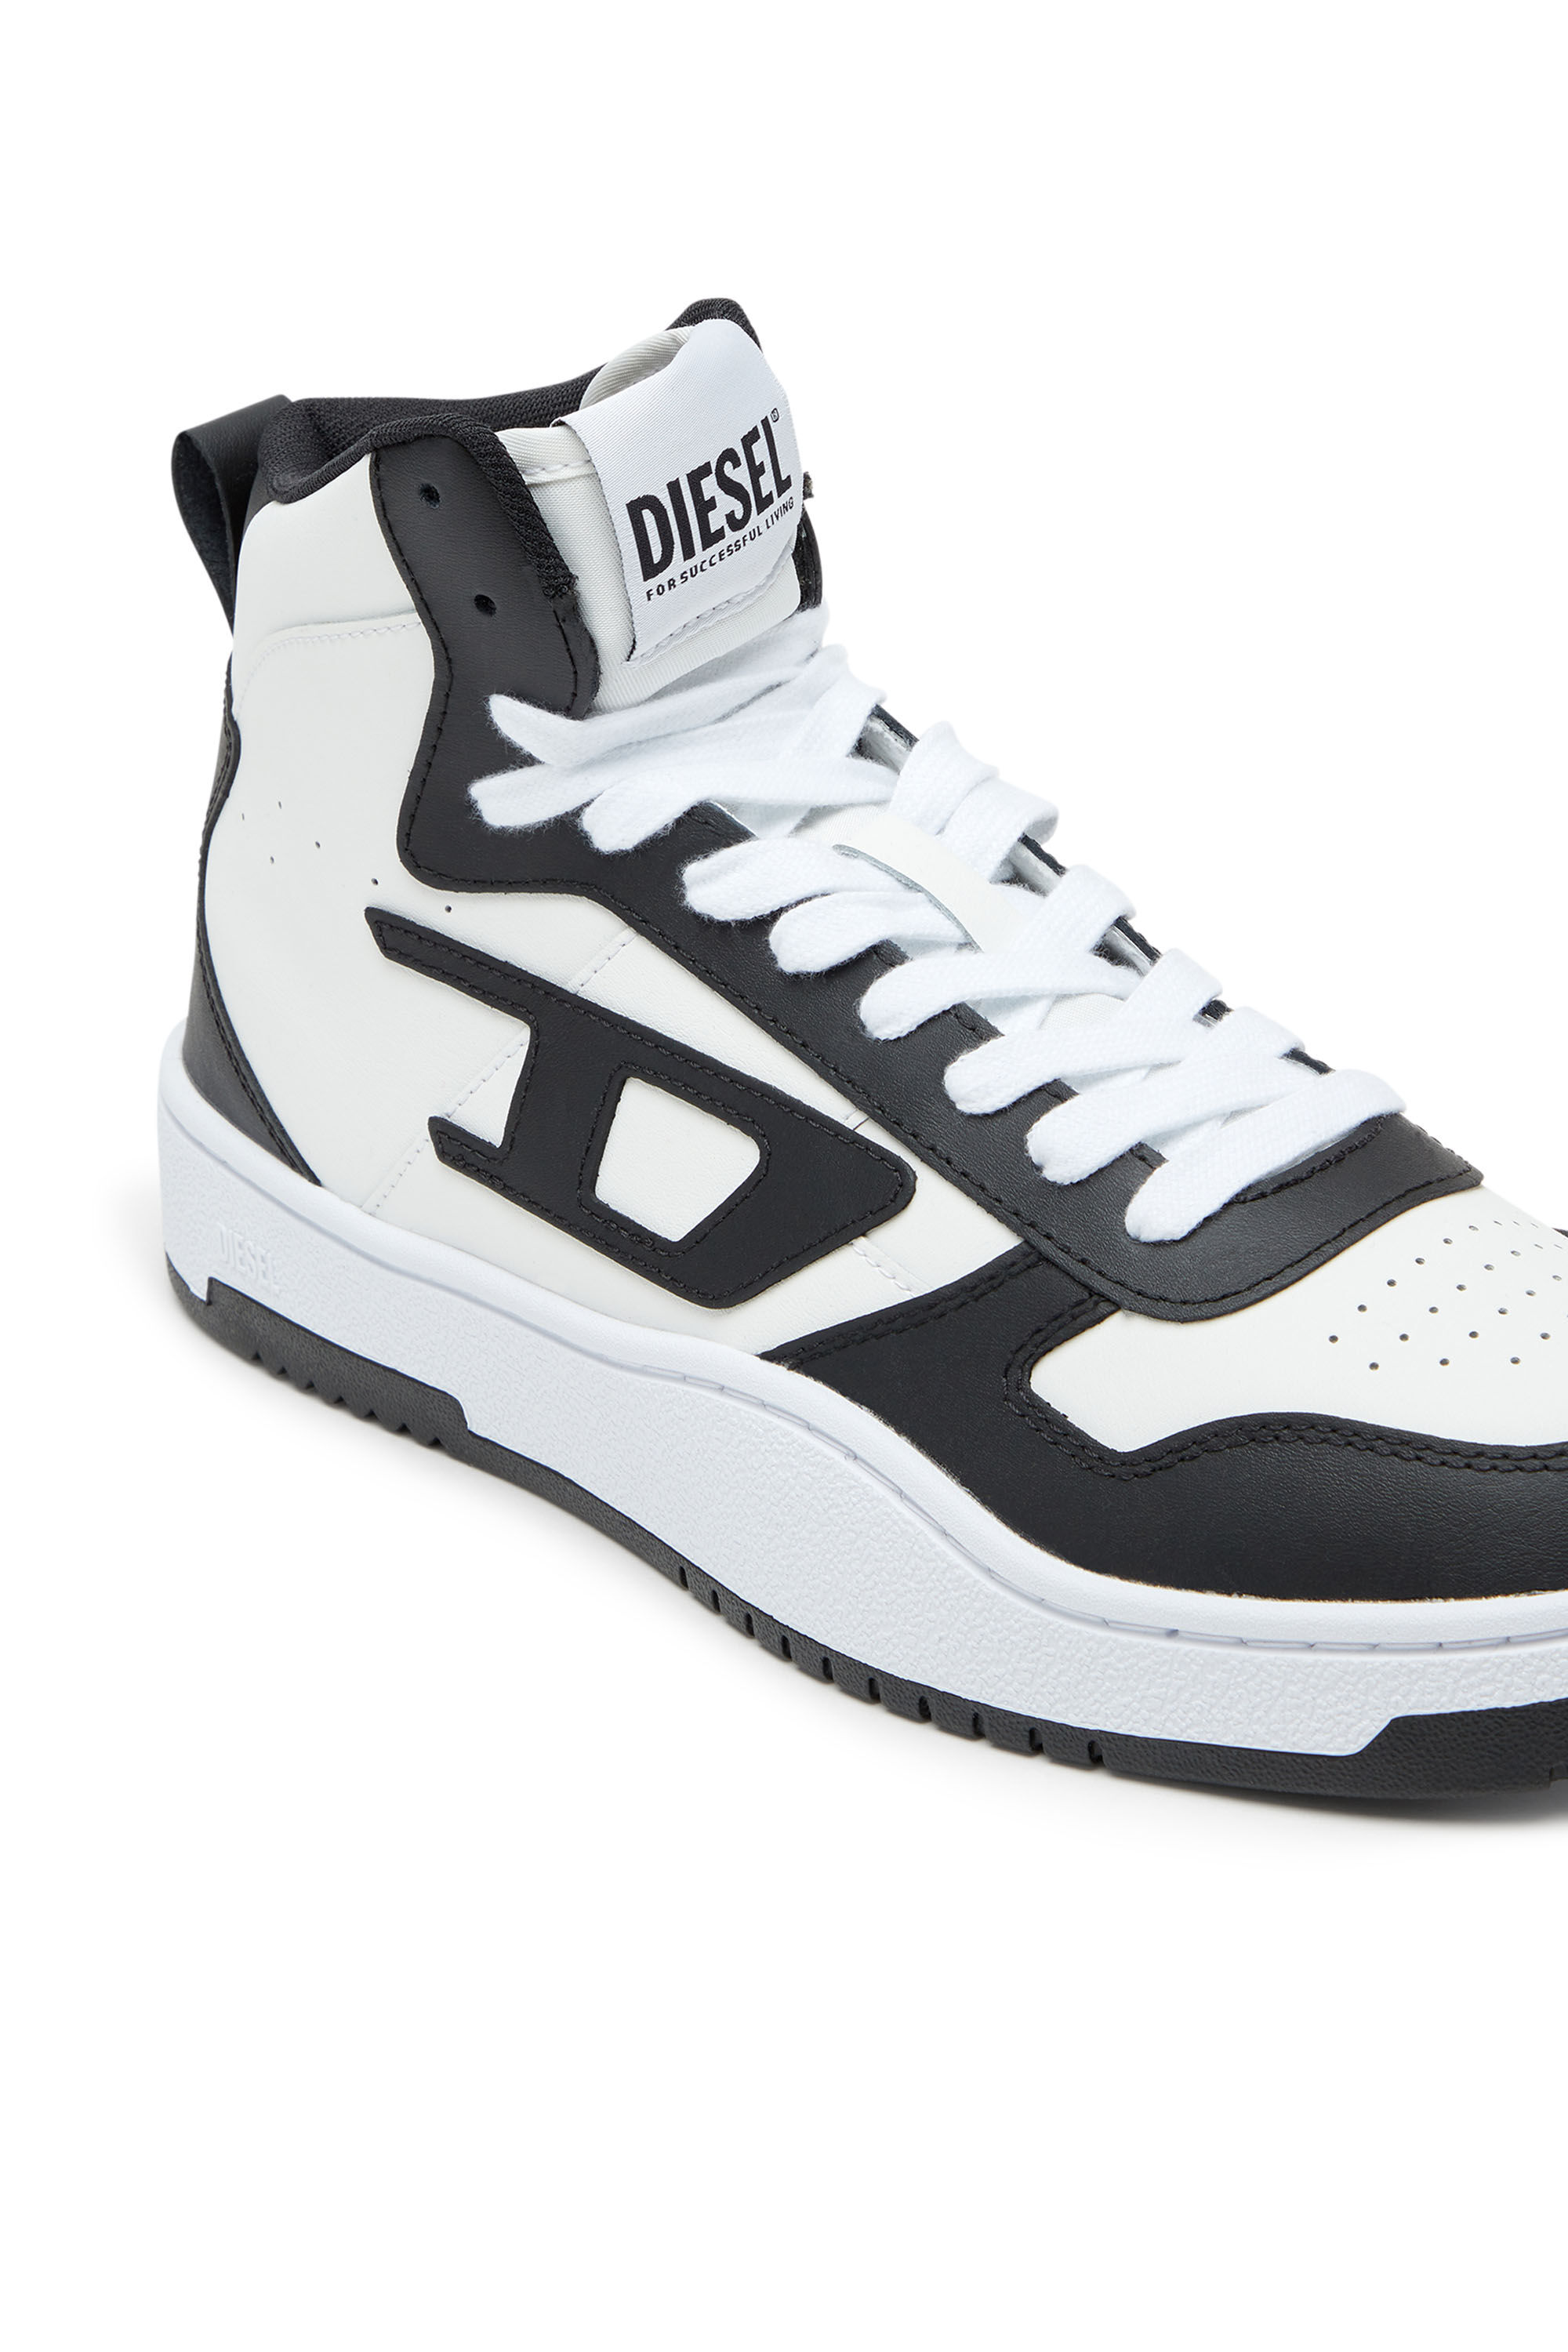 Diesel - S-UKIYO V2 MID, Man S-Ukiyo-High-top sneakers in leather in Multicolor - Image 6